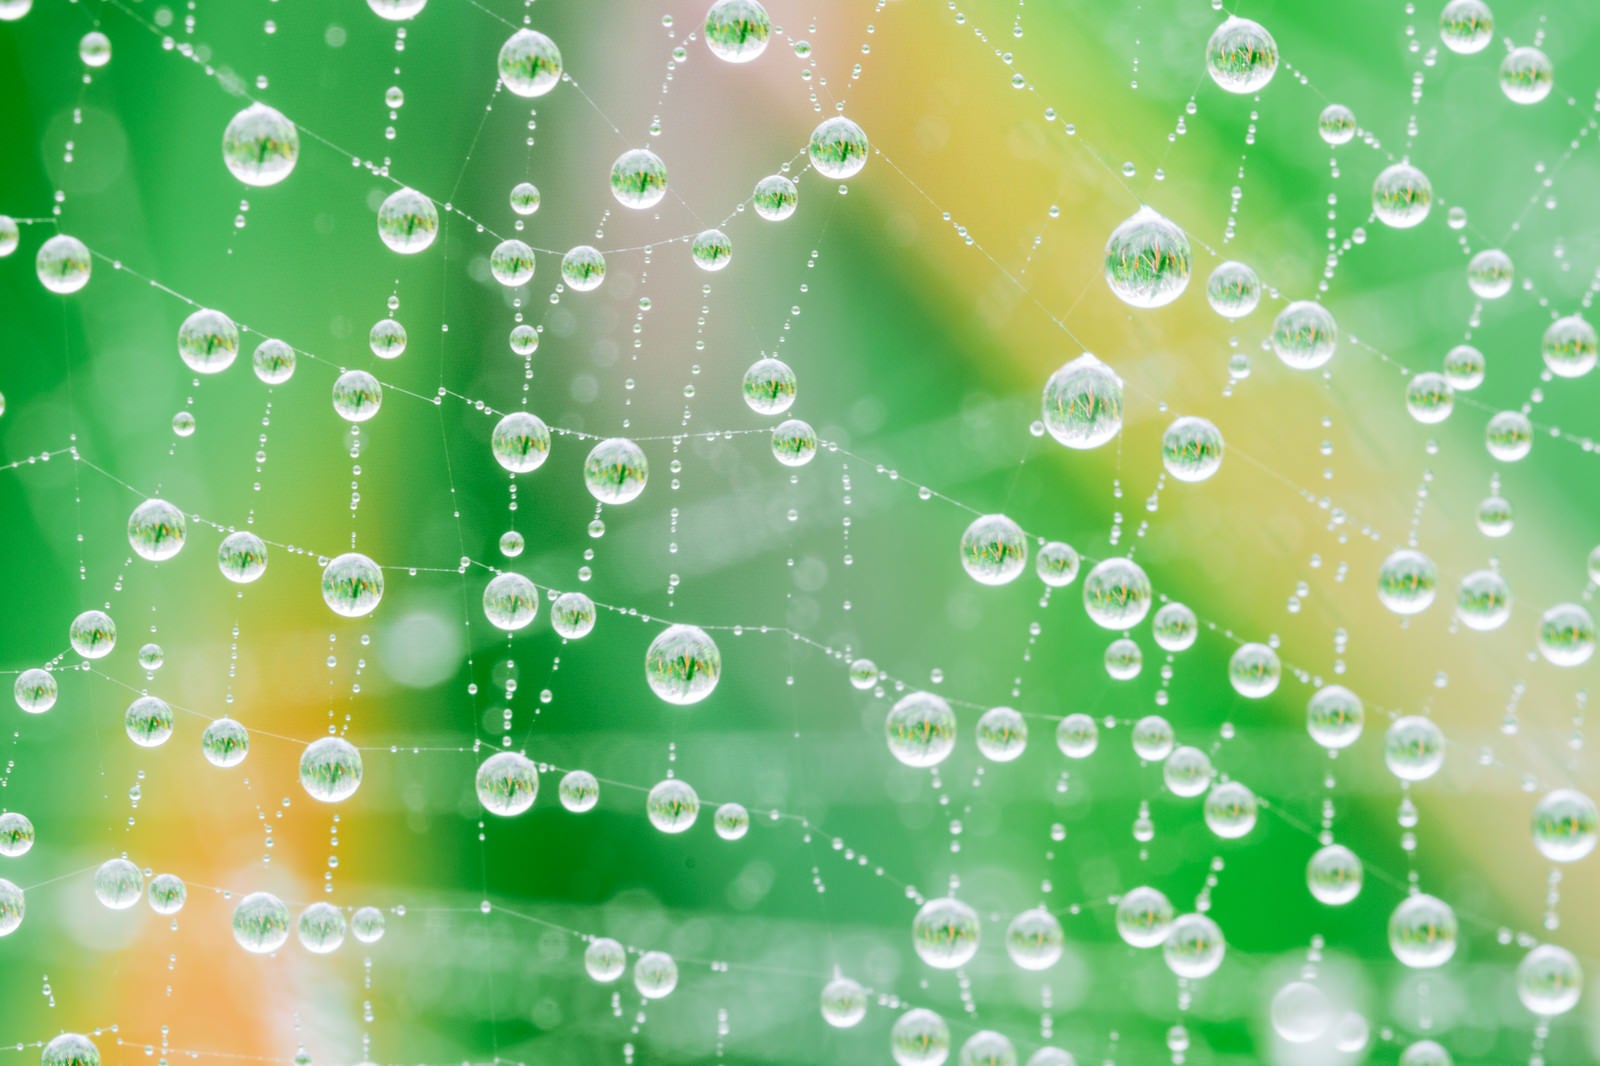 「雨上がりの蜘蛛の巣に輝く水滴」の写真